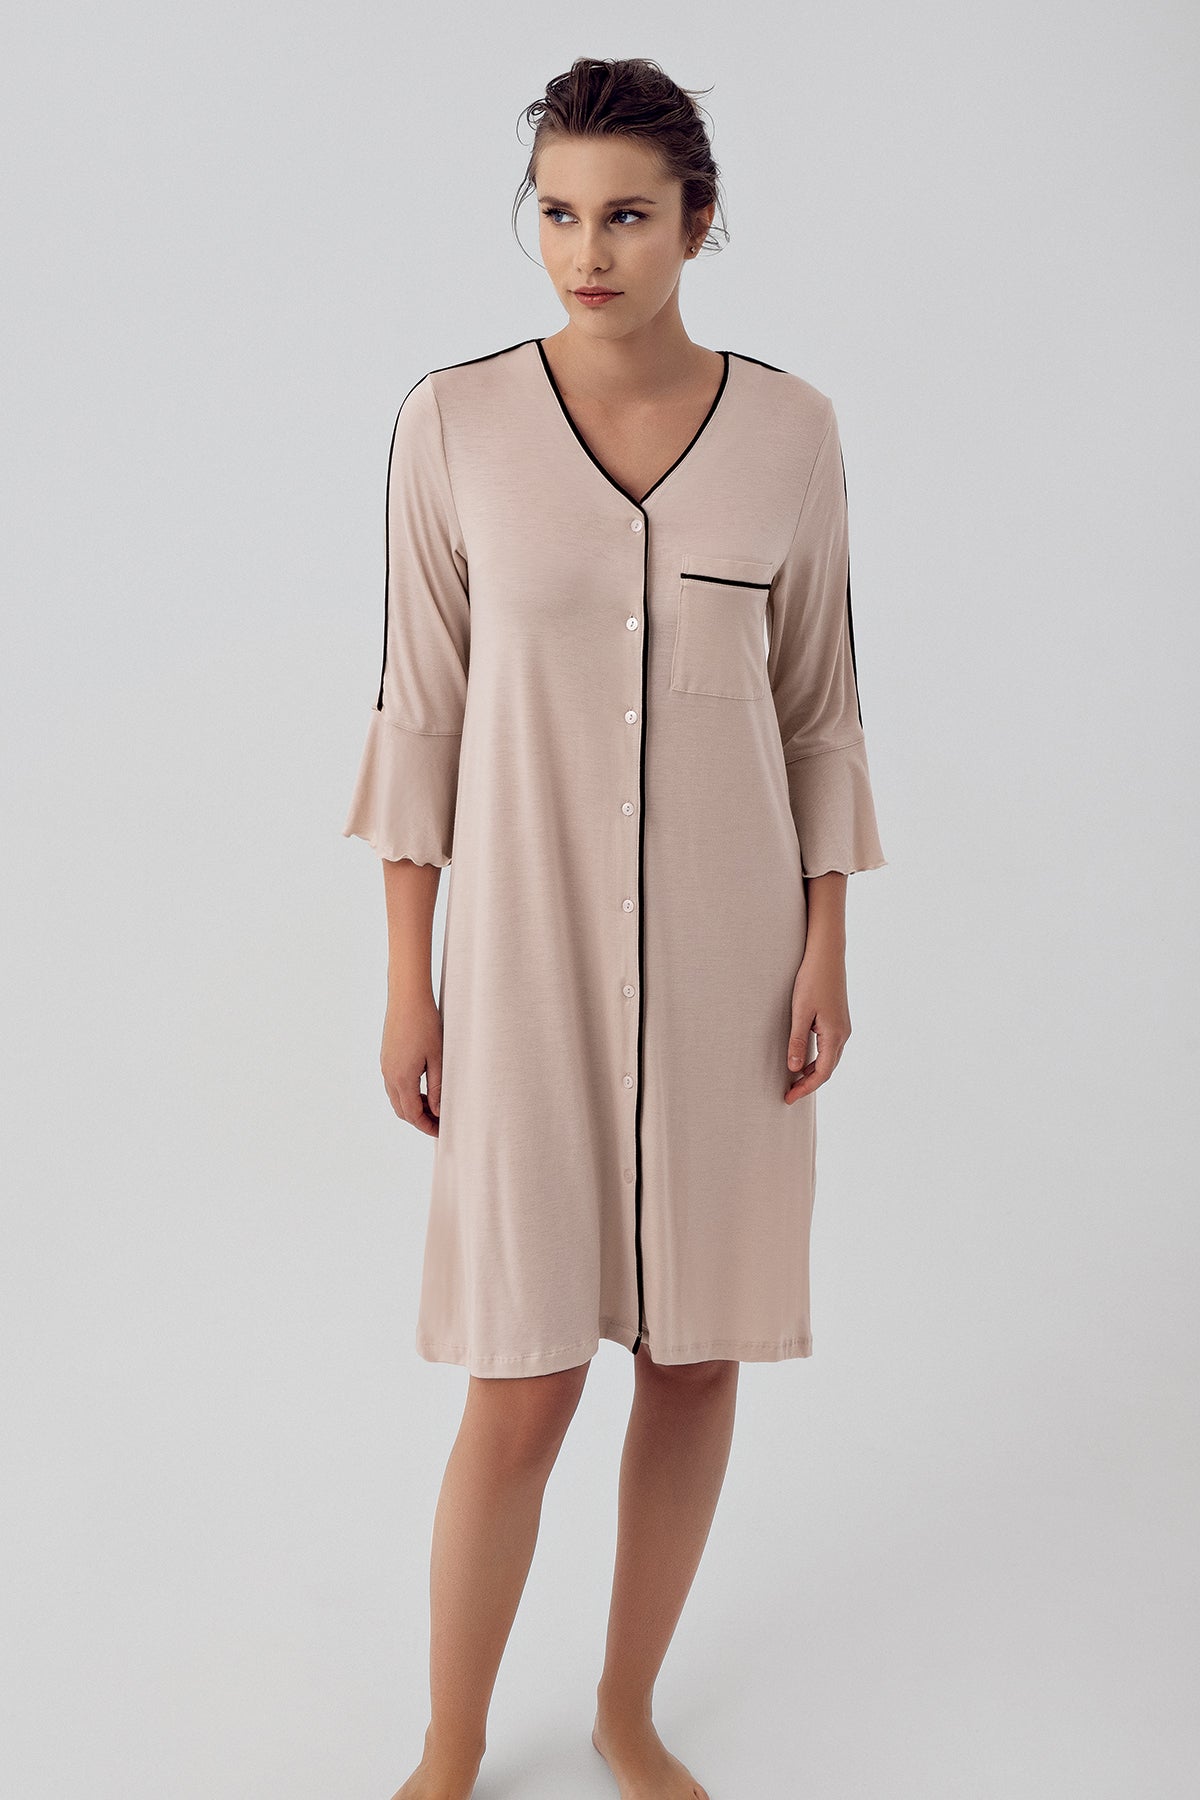 Shopymommy 16107 Strip Maternity & Nursing Nightgown Beige